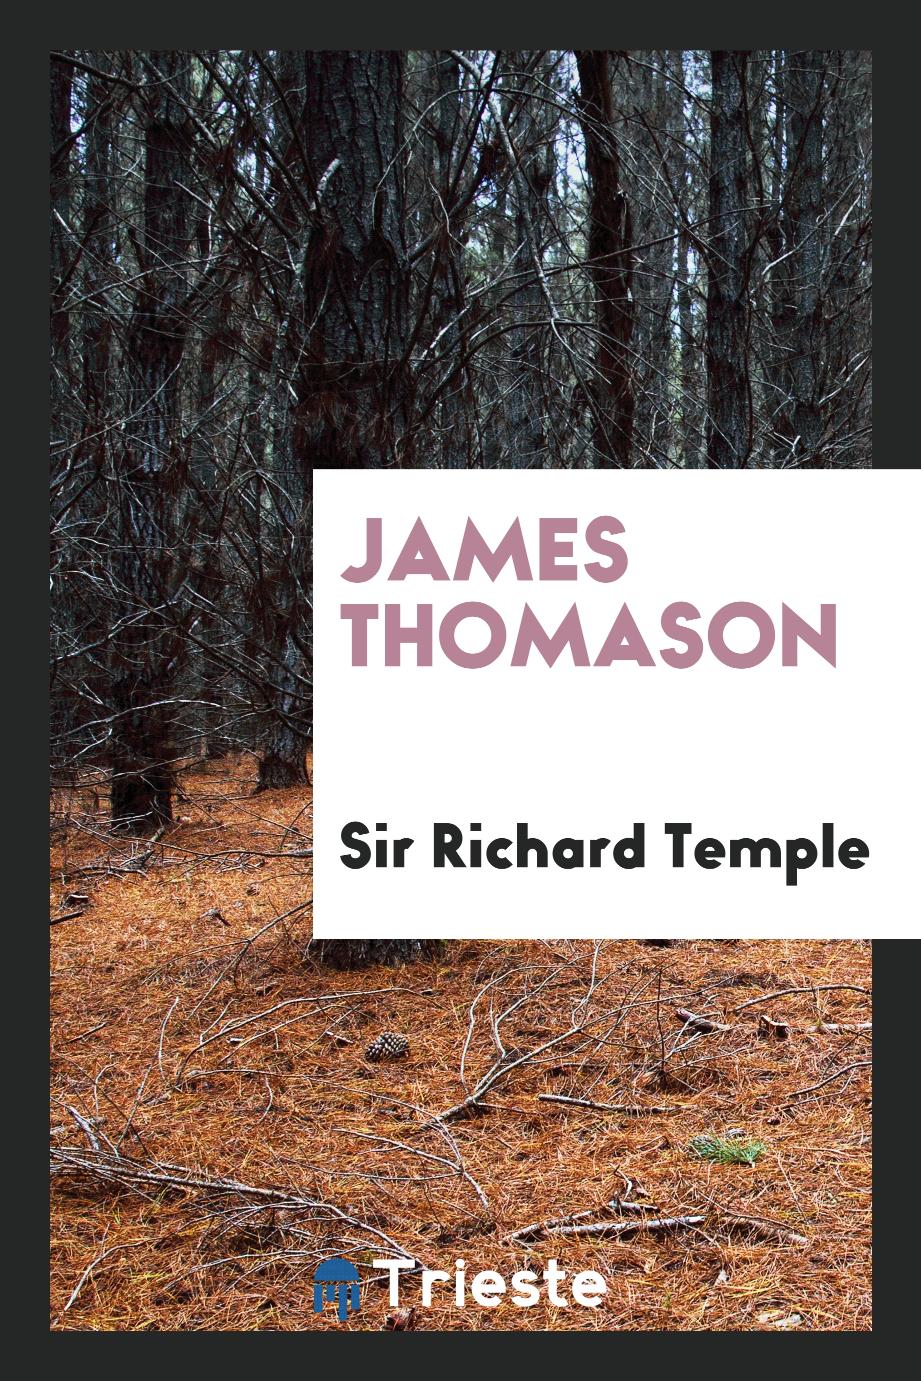 James Thomason